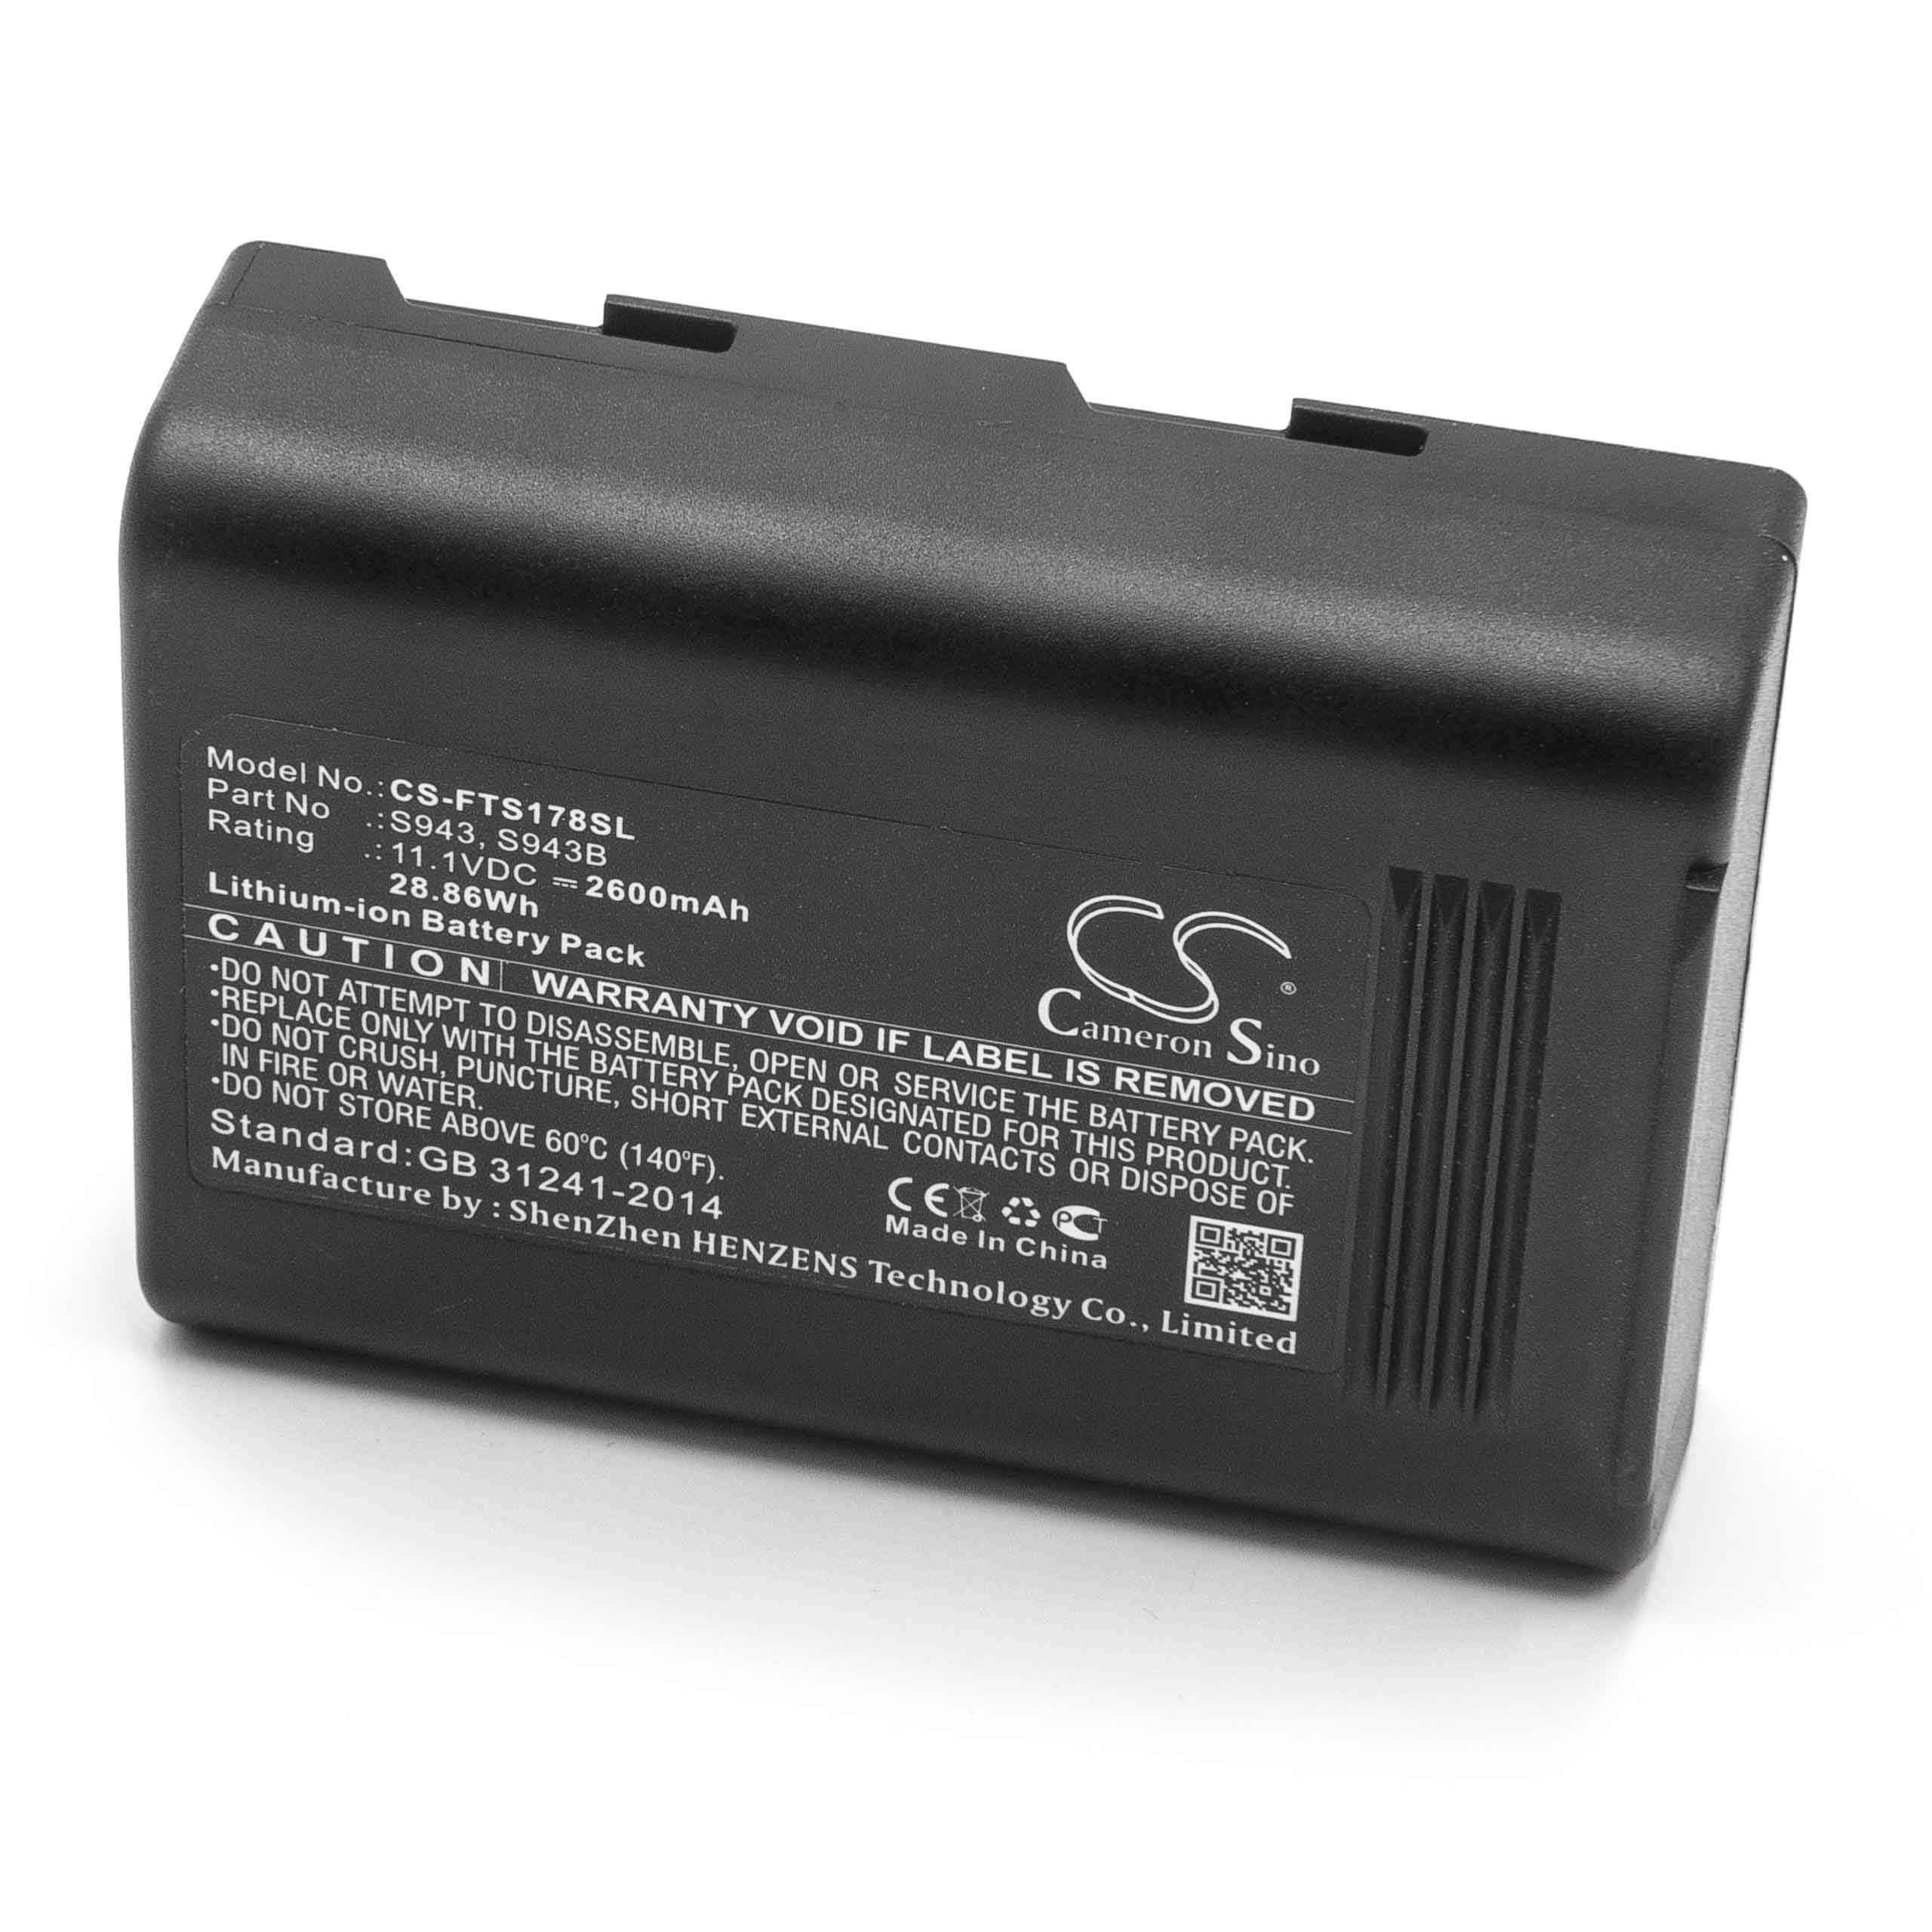 Batterie remplace FITEL S943B, S943 pour soudeuse - 2600mAh 11,1V Li-ion